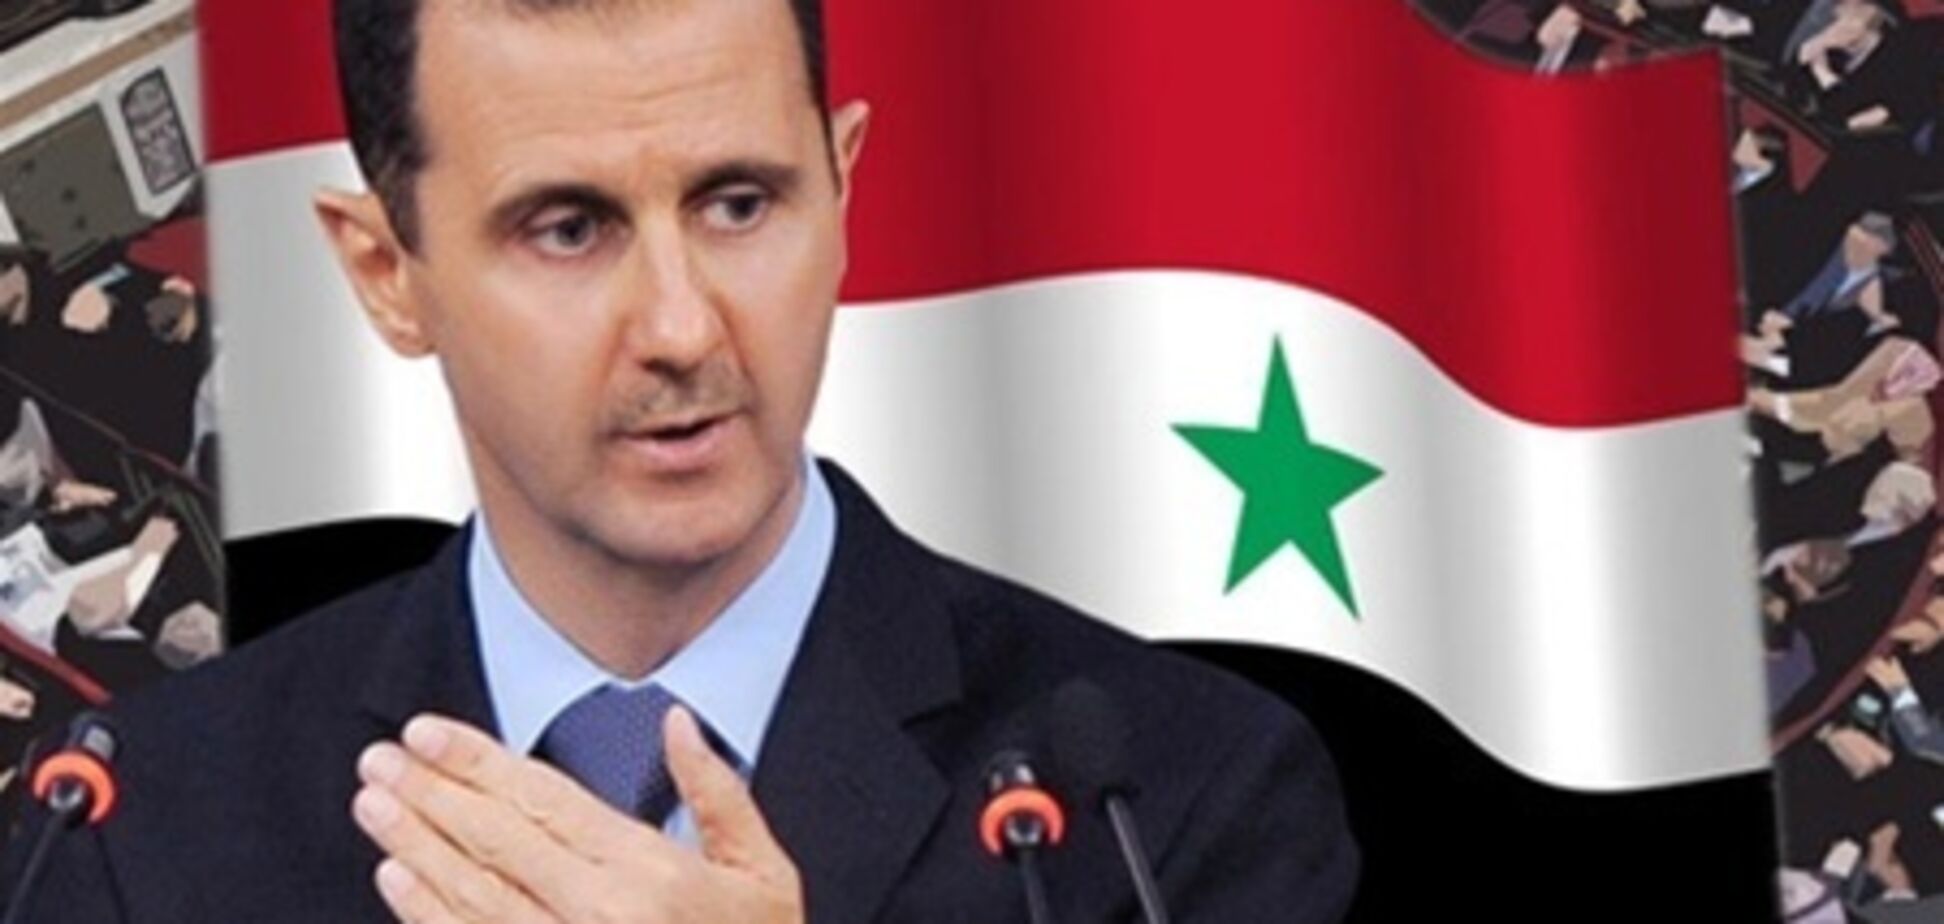 ЗМІ: президент Сирії мертвий